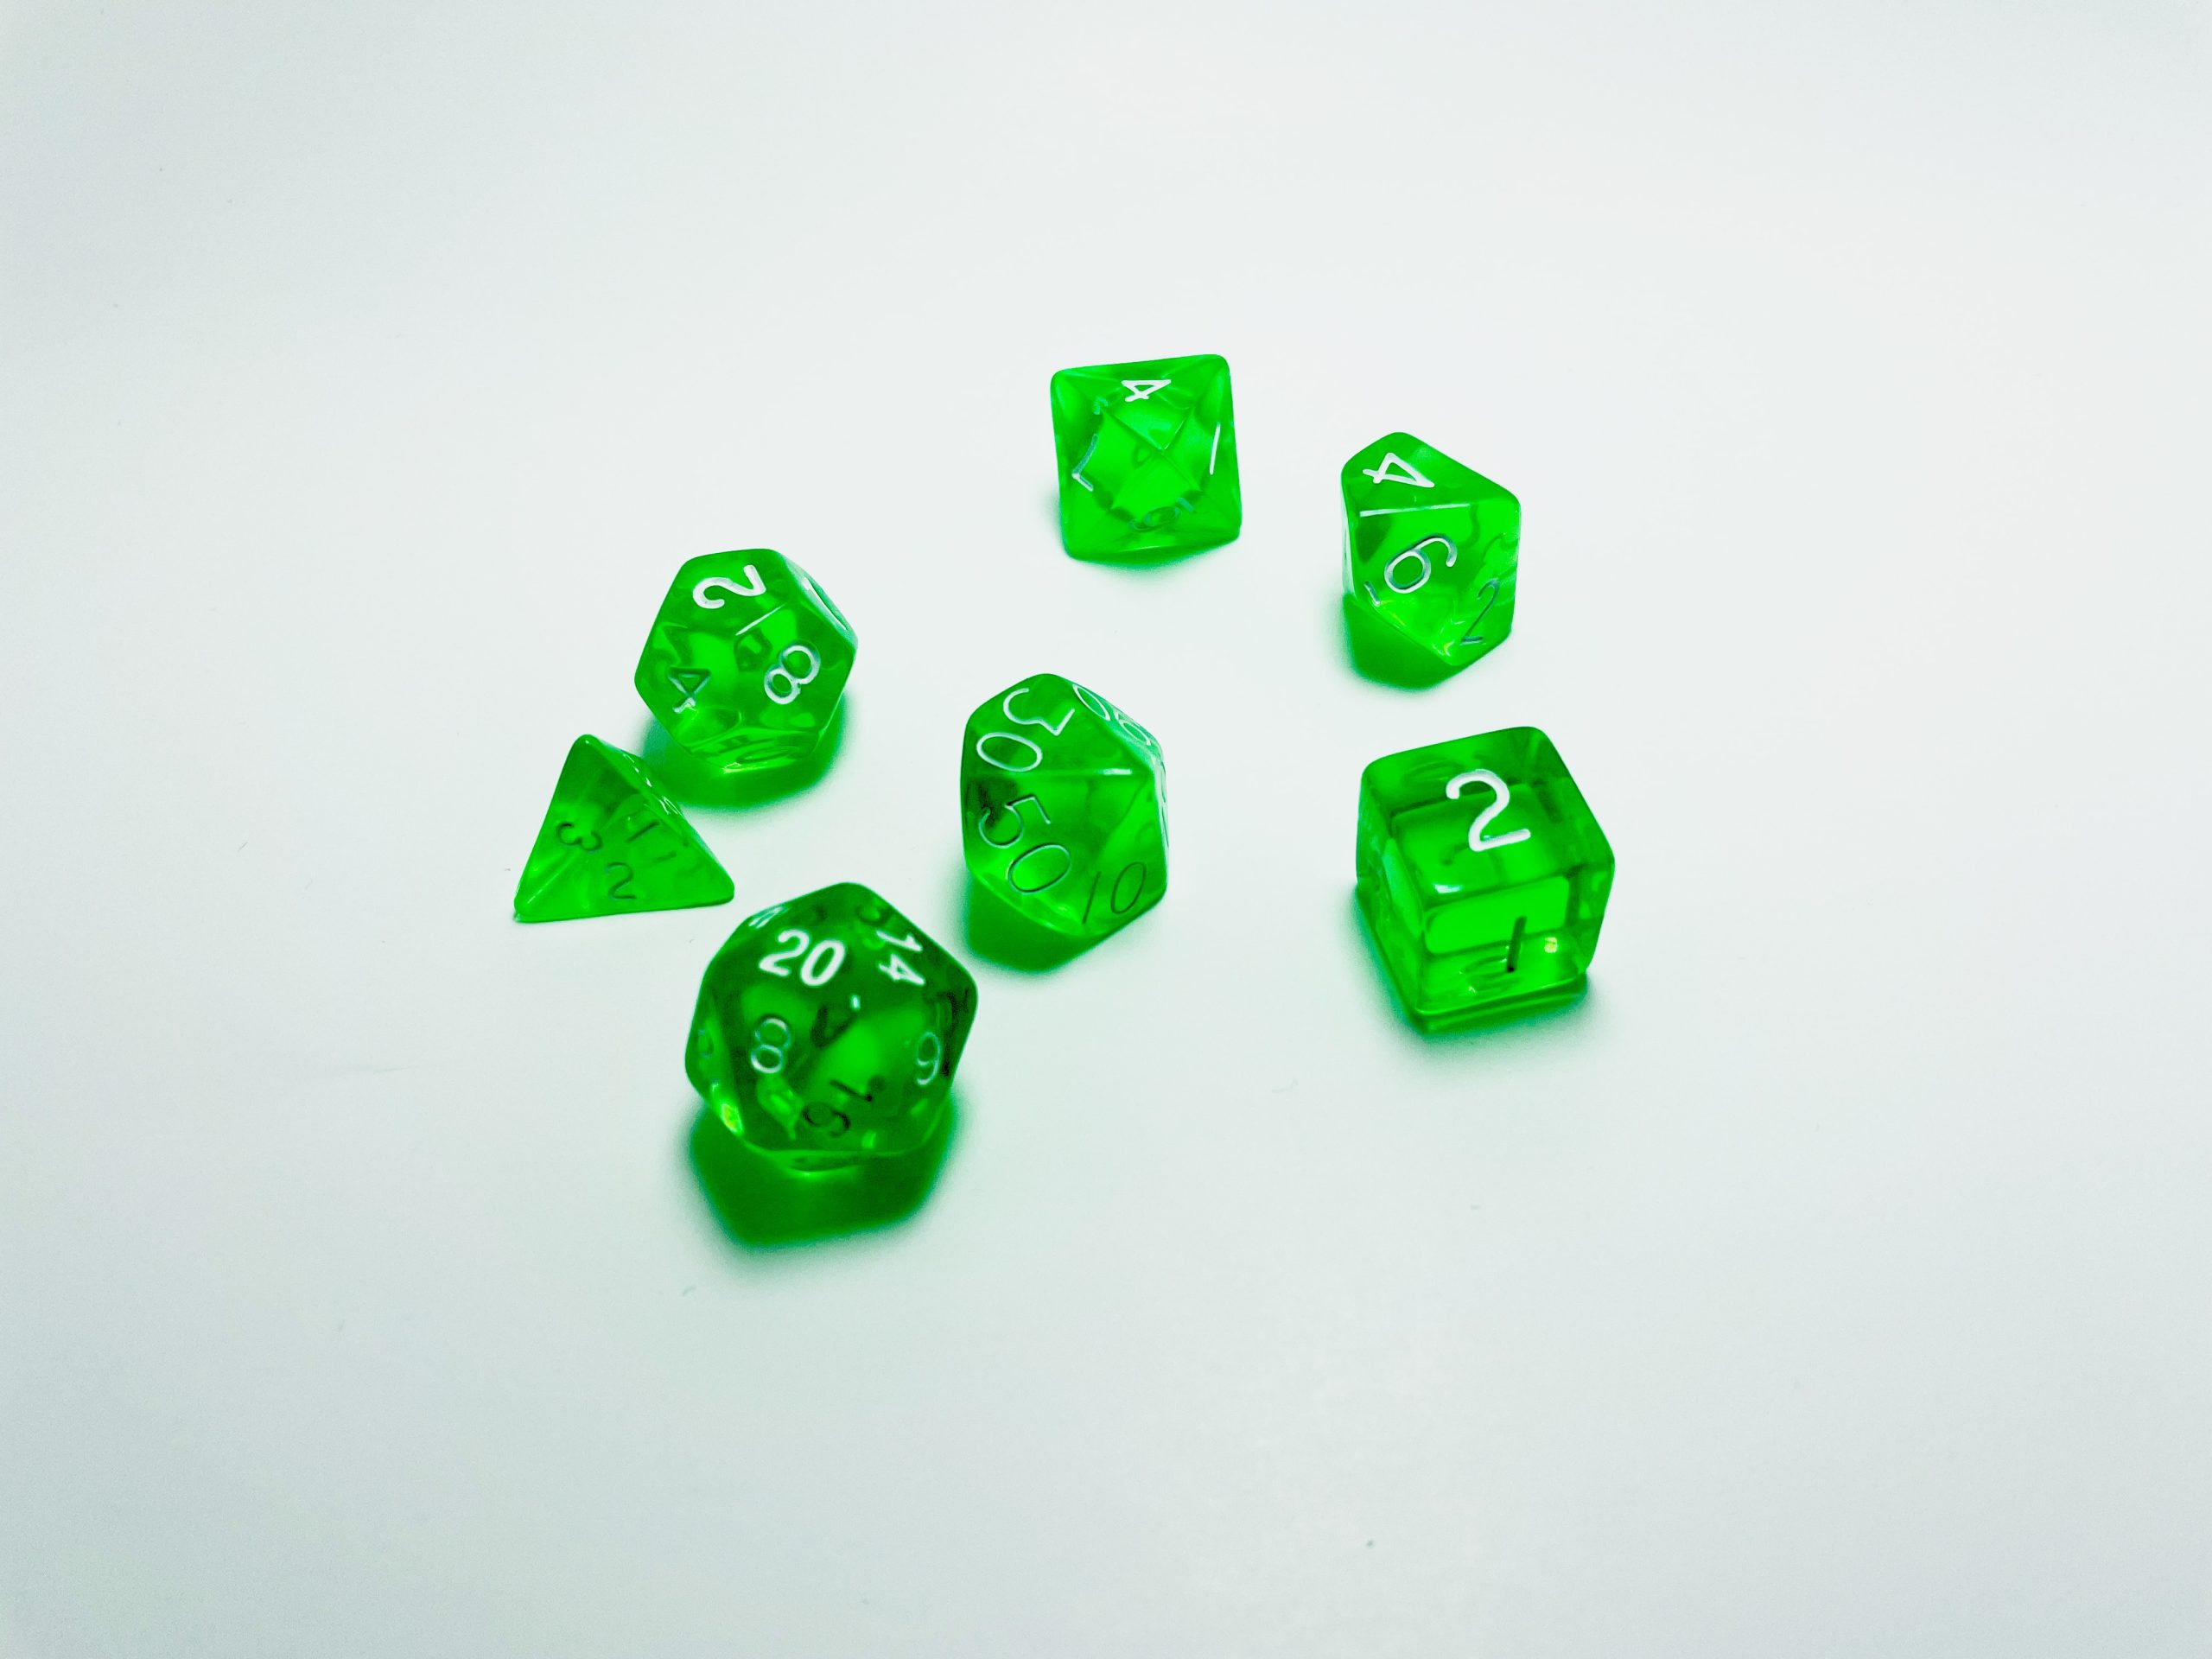 bg3 dice